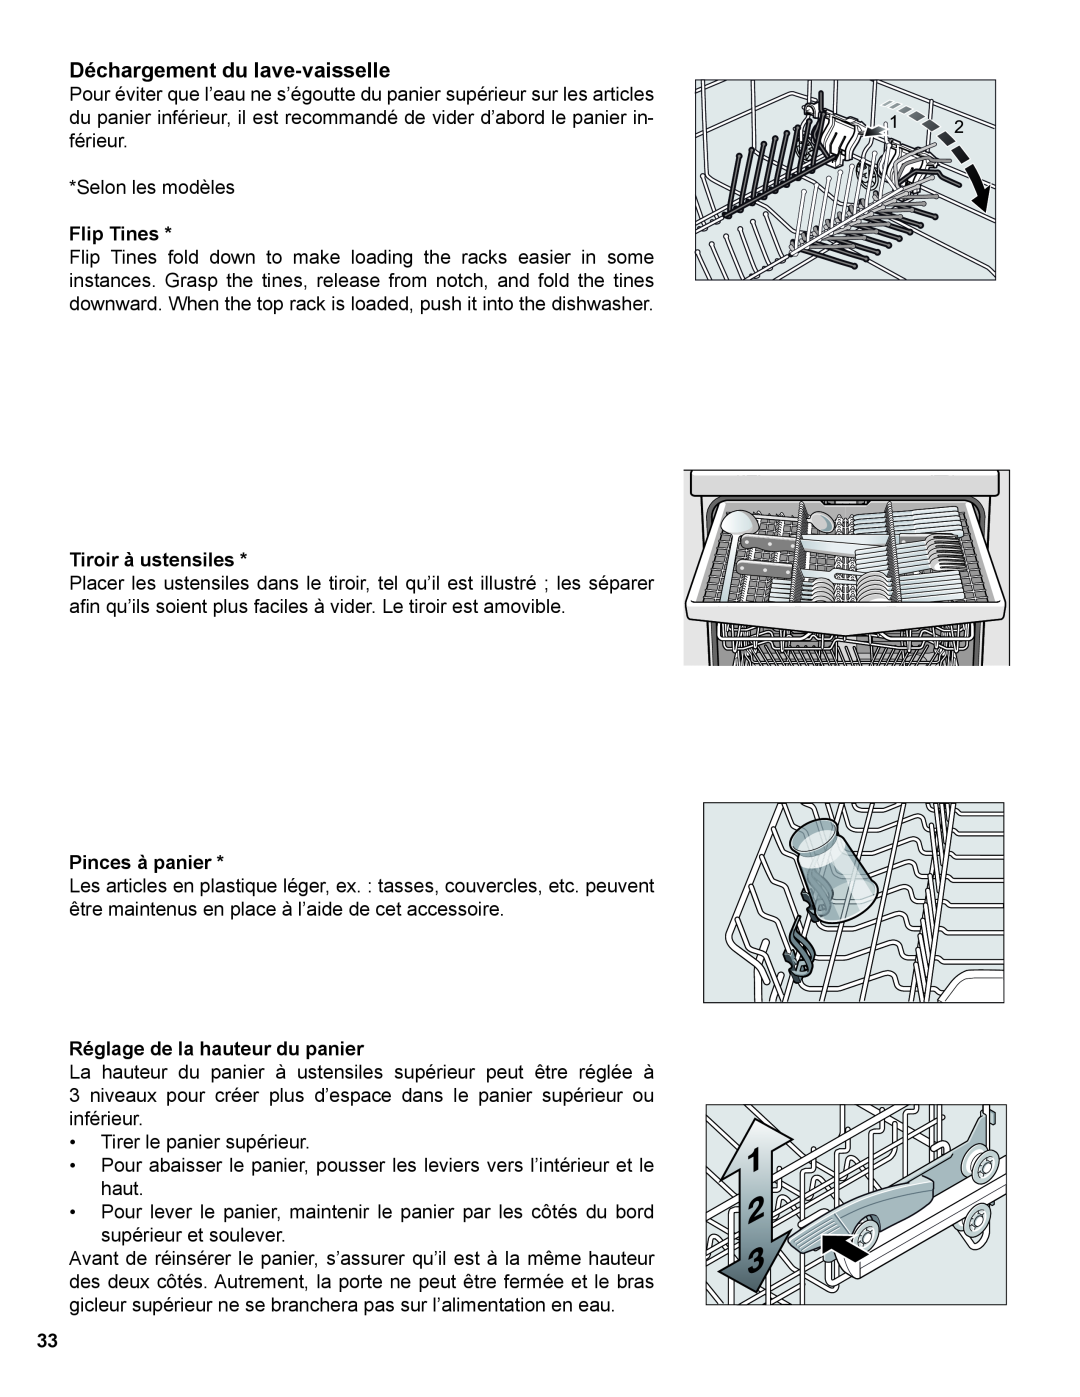 Thermador Dishwasher manual Déchargement du lave-vaisselle, Flip Tines, Tiroir à ustensiles, Pinces à panier 